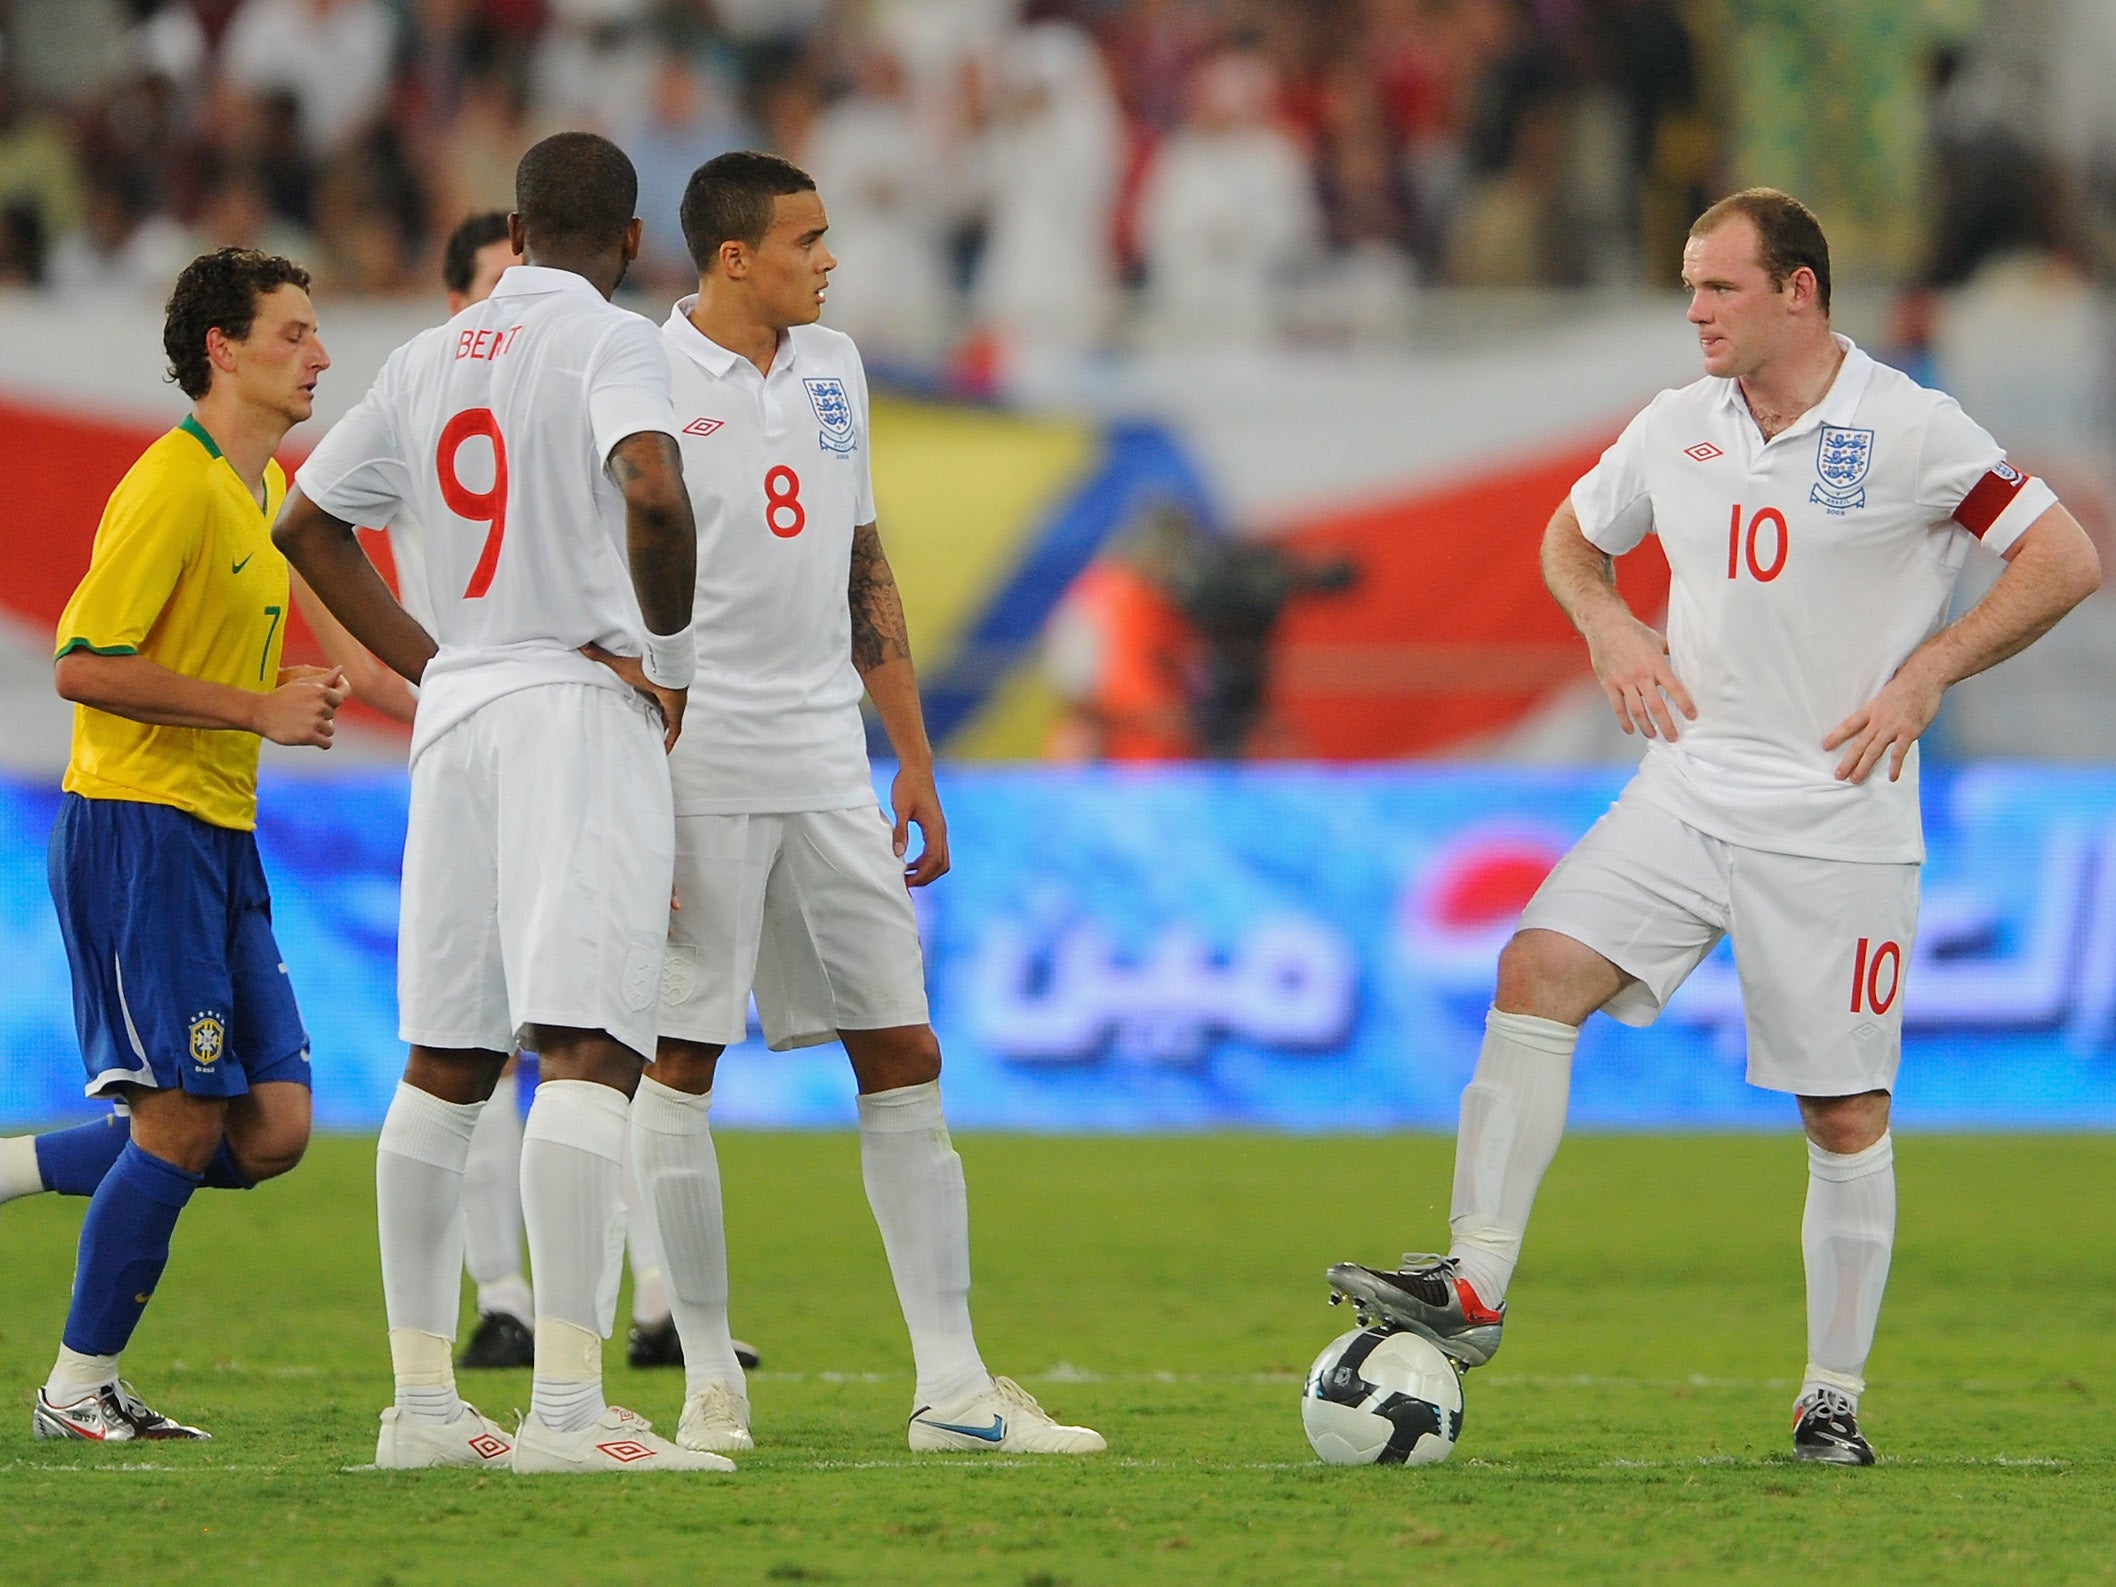 Jermaine Jenas alongside Wayne Rooney and Darren Bent in a friendly against Brazil in 2009